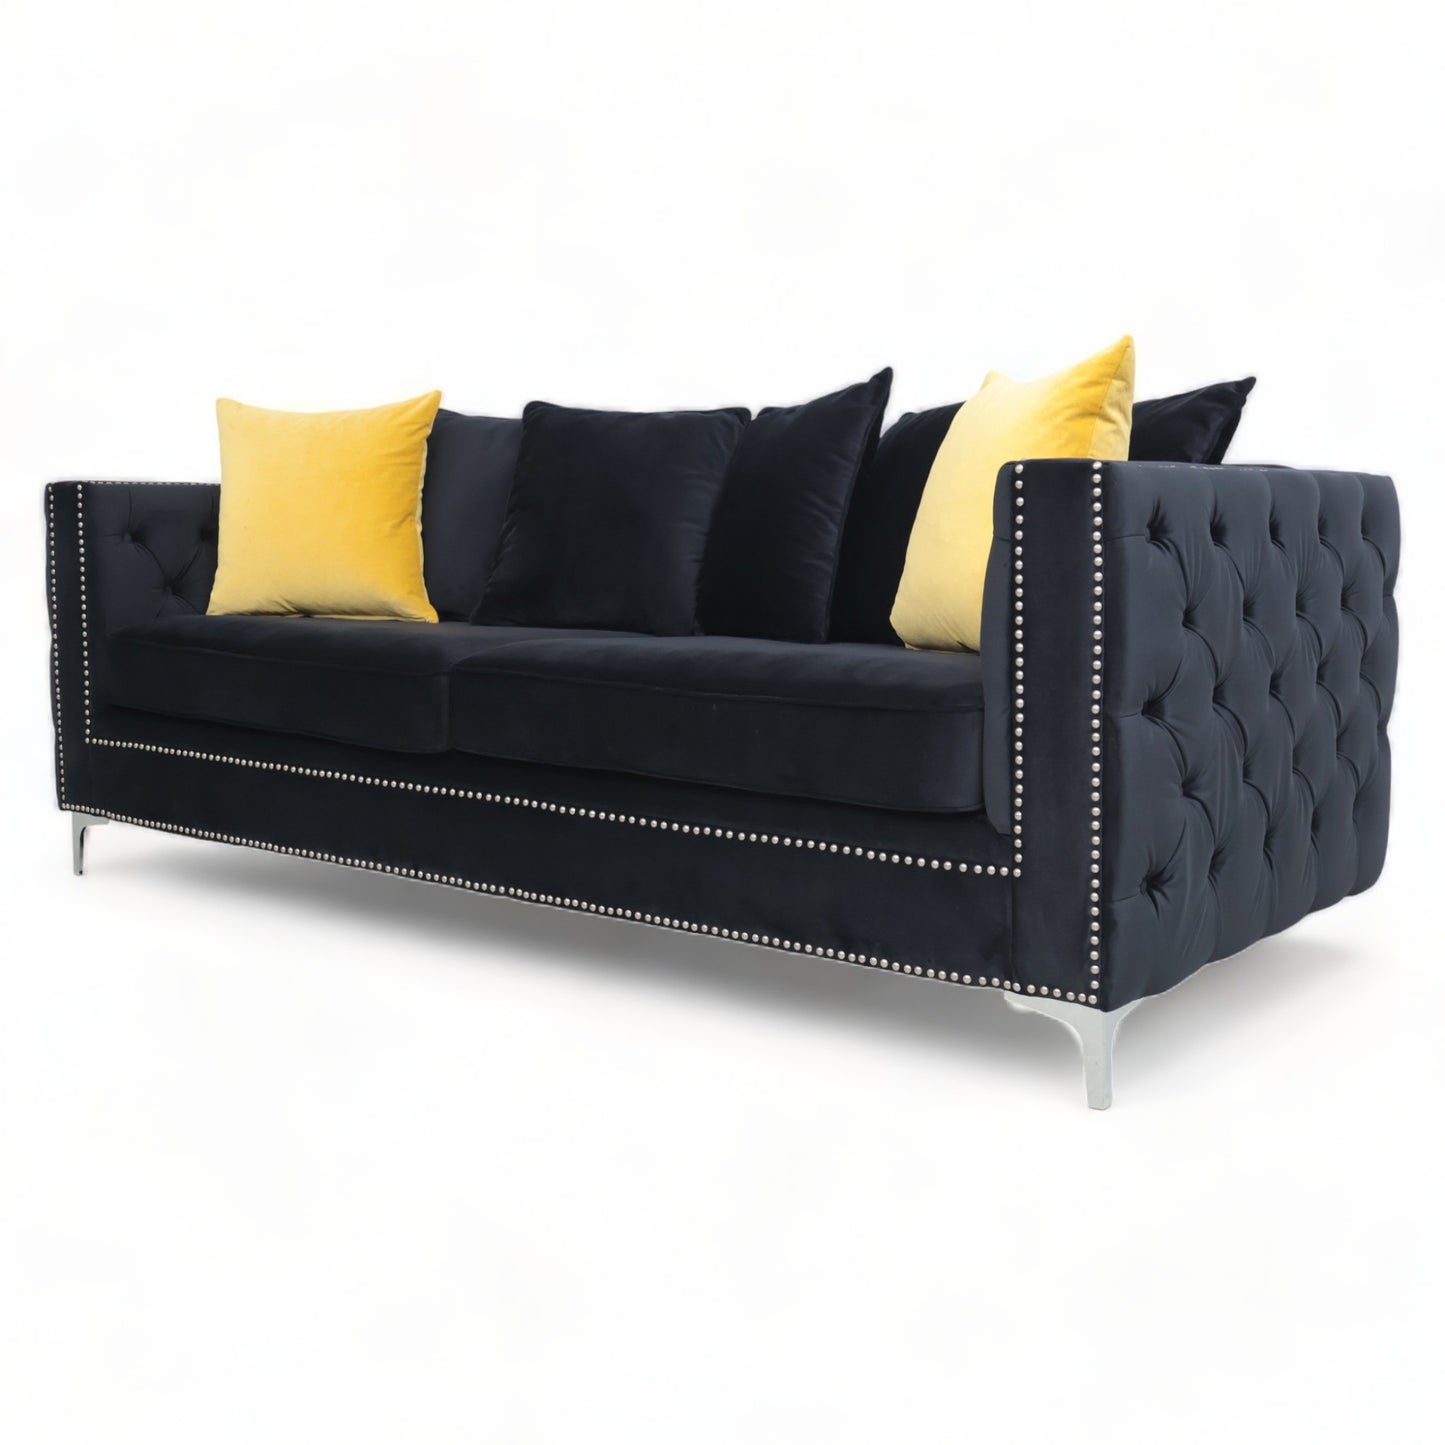 Nyrenset | Sort Kingston 3-seter sofa